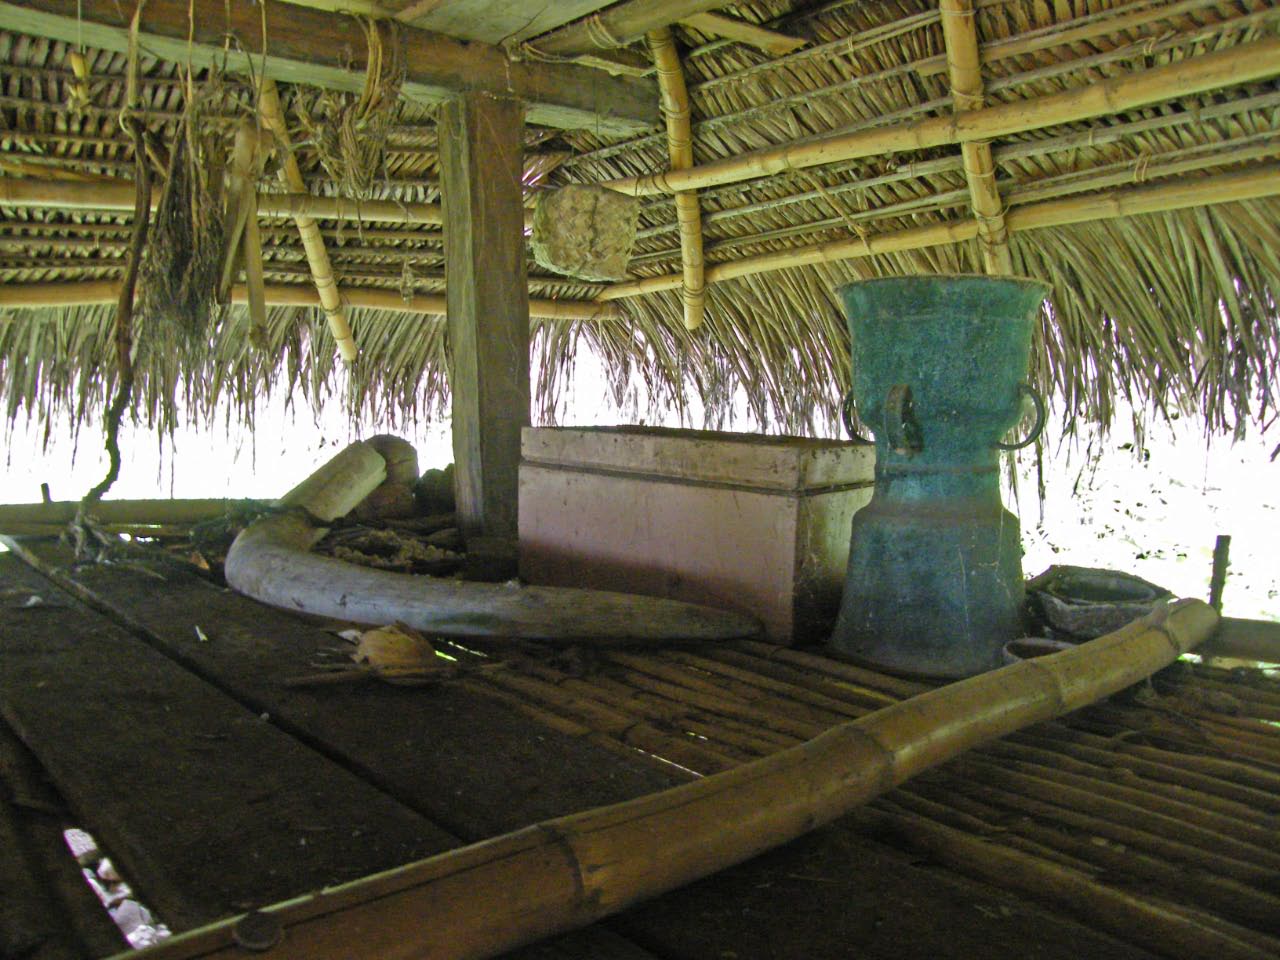 Défense d'éléphant et tambour de bronze, témoignage des échanges commerciaux très anciens dans la région